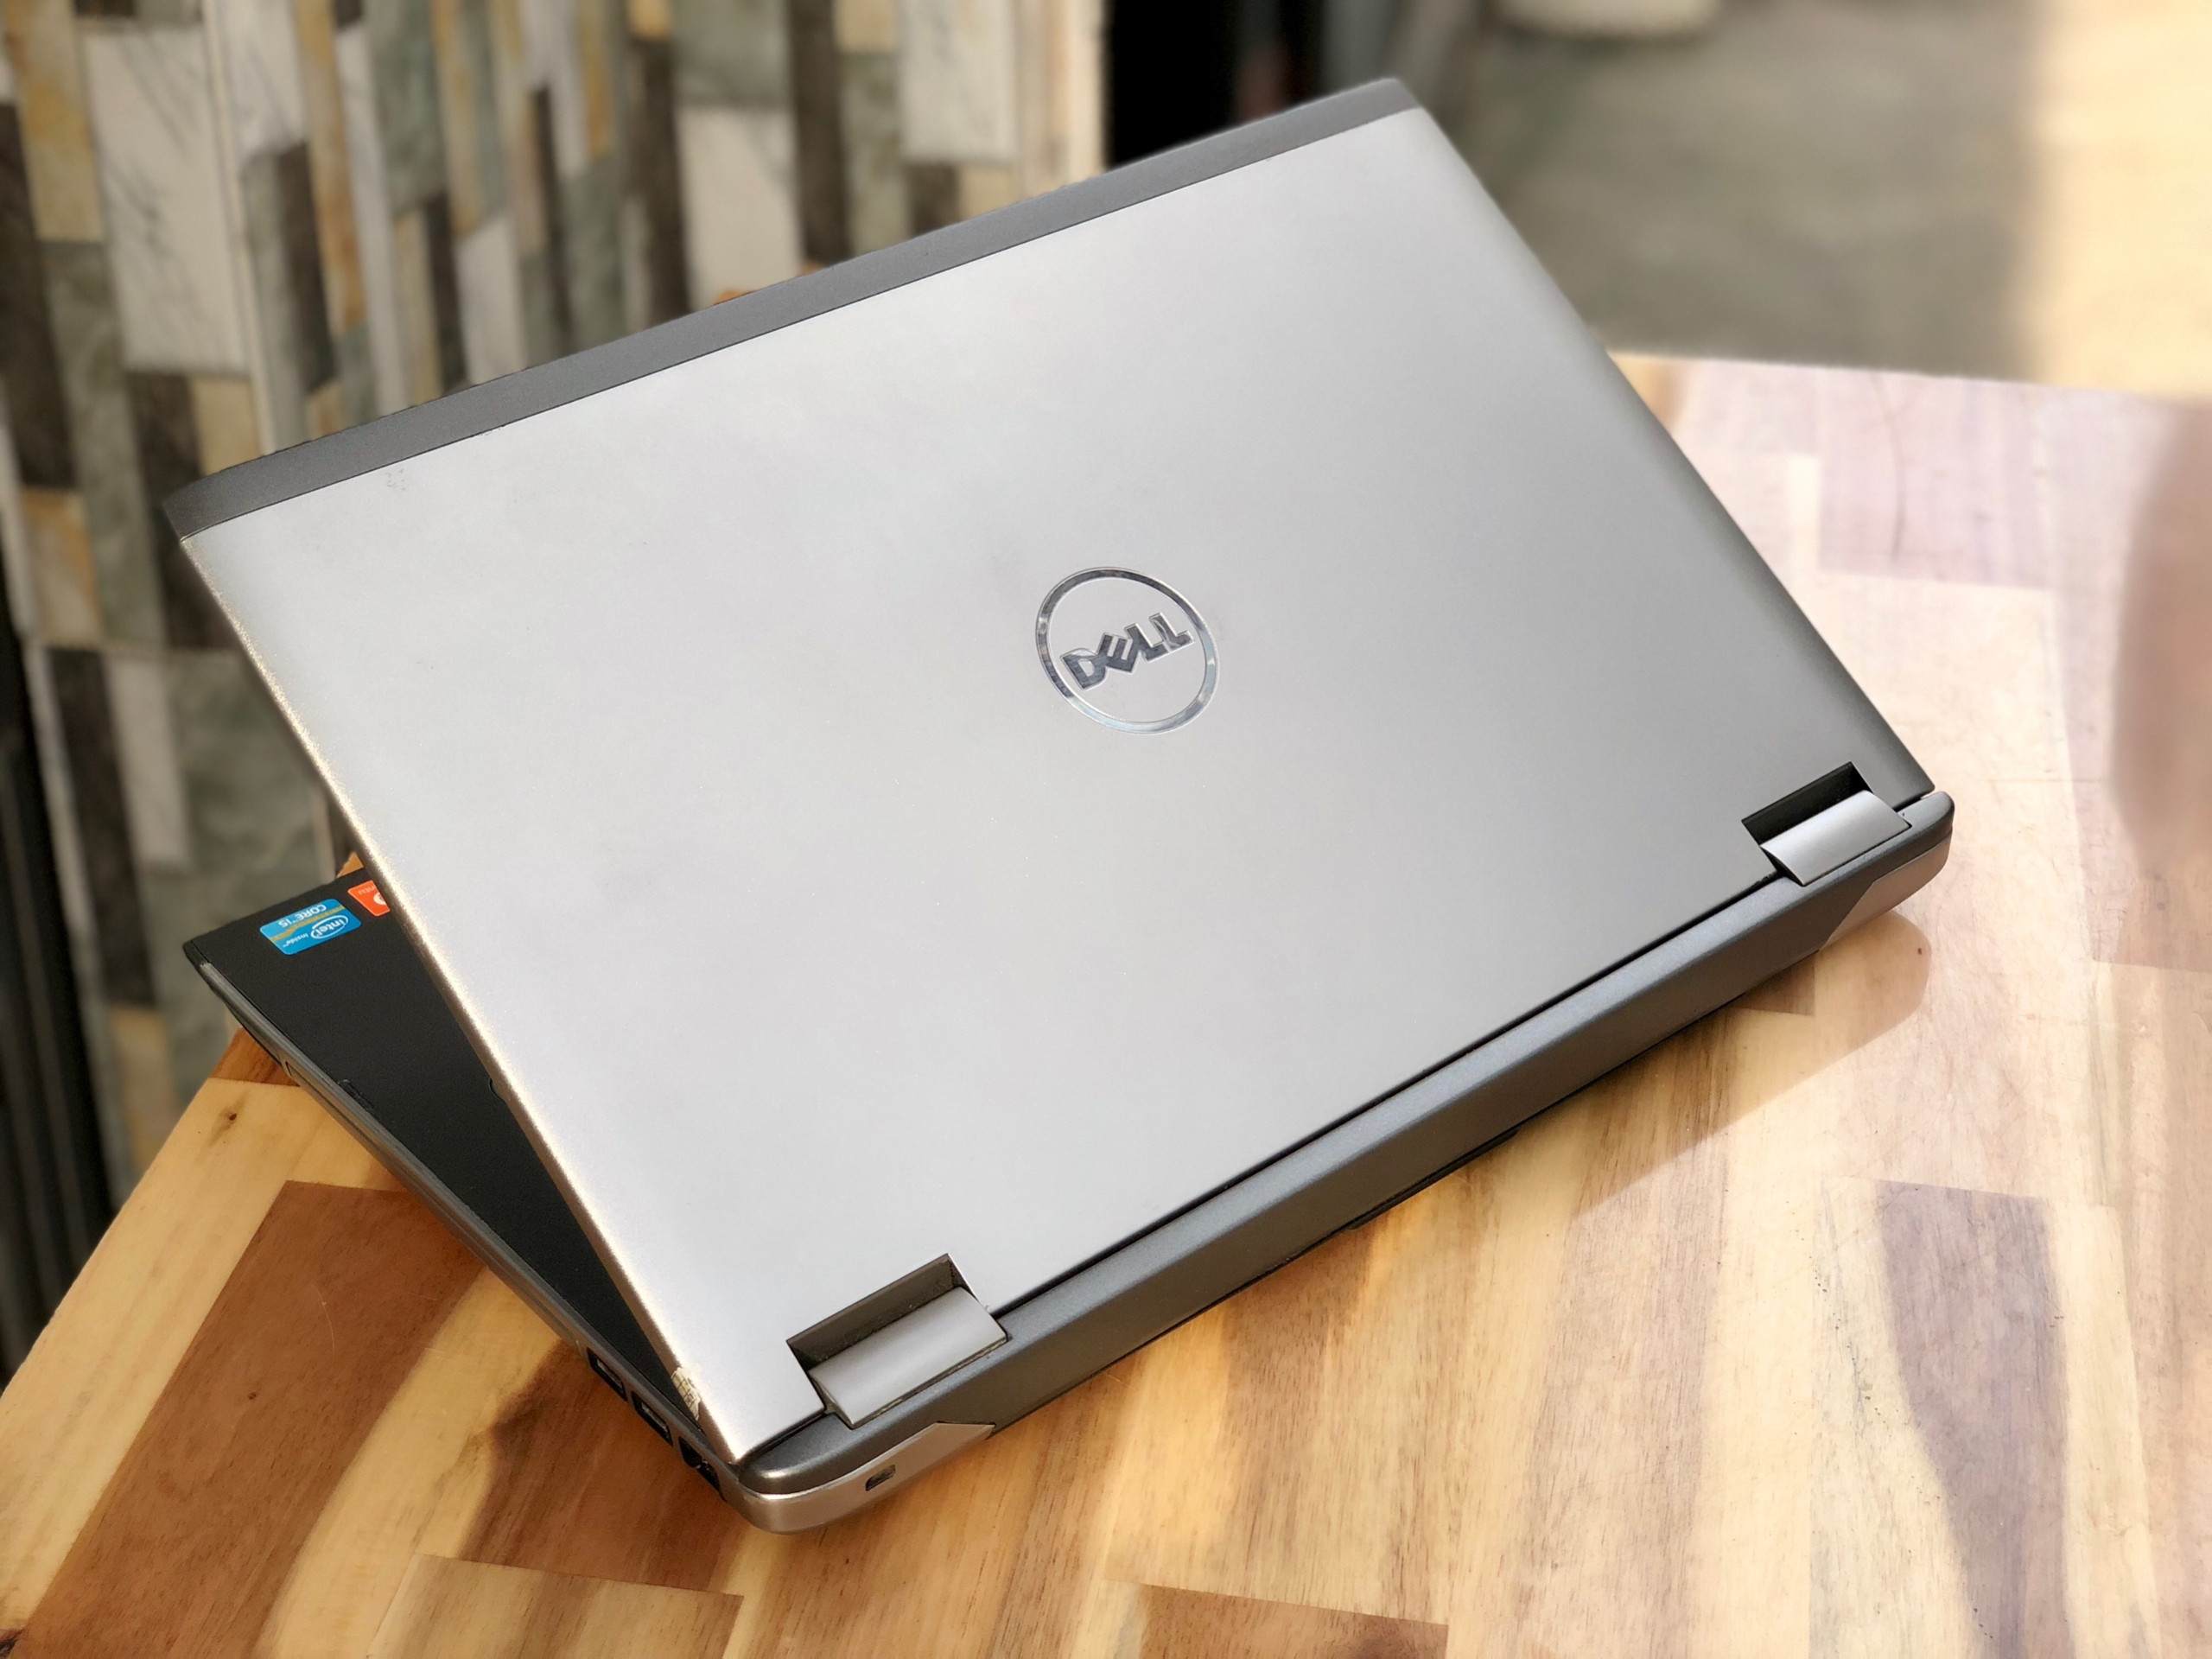 Laptop Dell Vostro 3560, i5 3230M 4G 500G Vga 2G Đẹp zin 100% Giá rẻ3